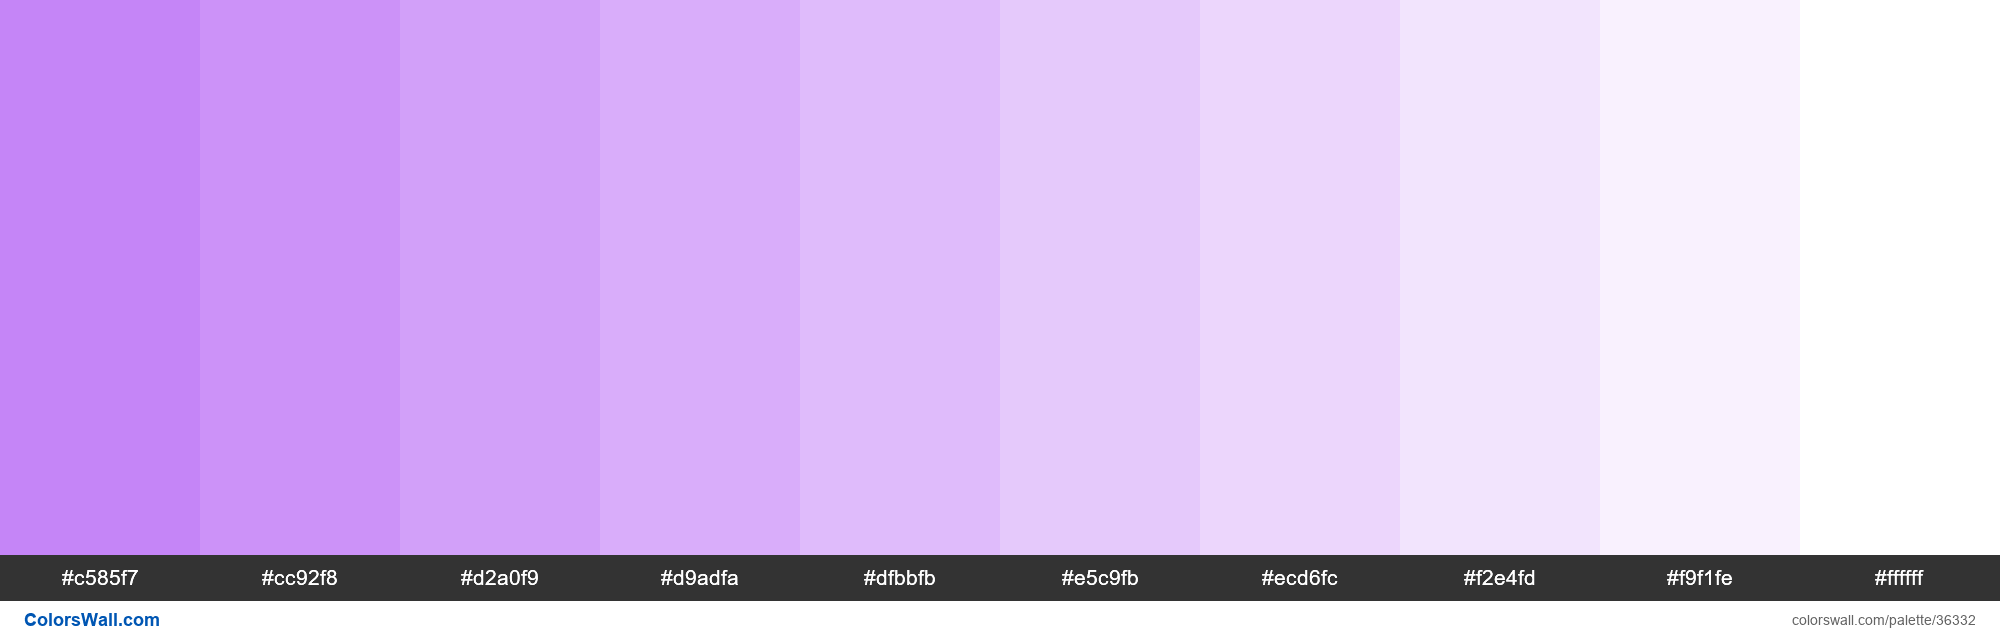 Tints XKCD Color light purple #bf77f6 hex colors palette